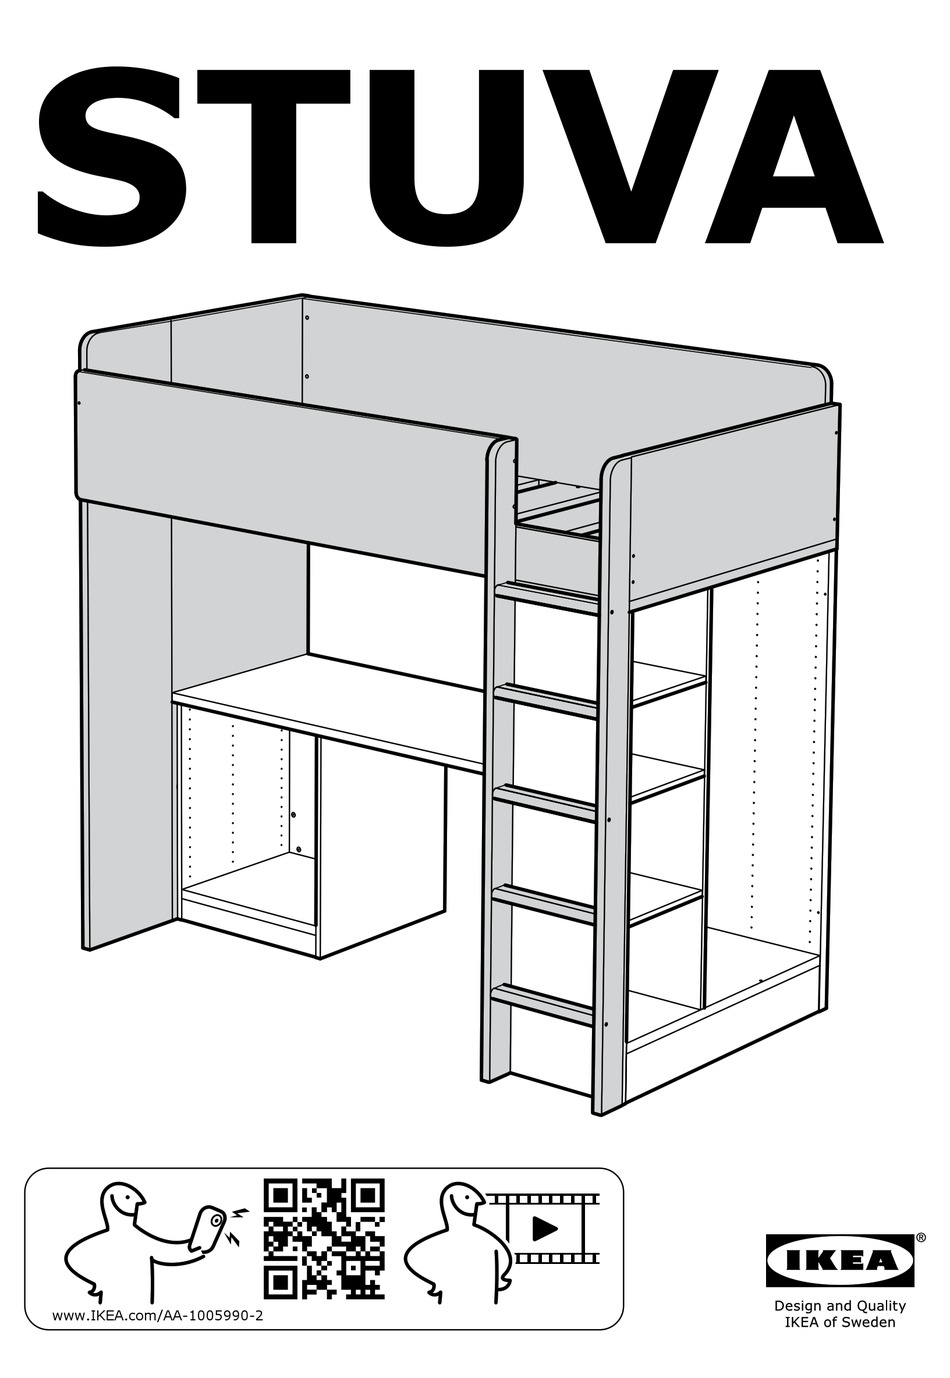 Ikea Stuva Assembly Instructions Manual, Ikea Bunk Bed Assembly Instructions